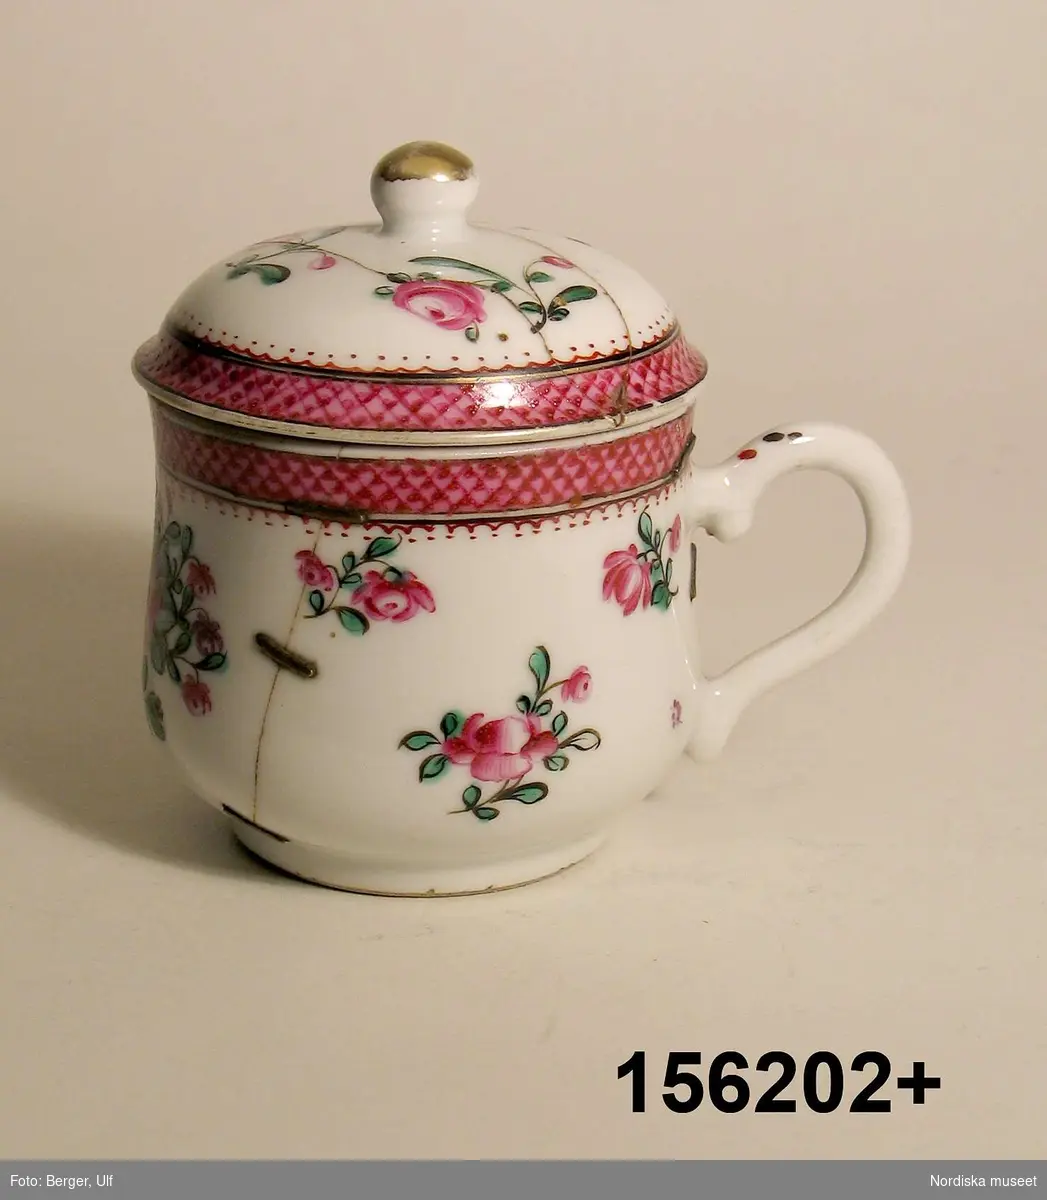 Montertext i Dukade bord: 
Gelékopp av kinesiskt porslin med dekor i famille rose. Kina, (1735-96). 
